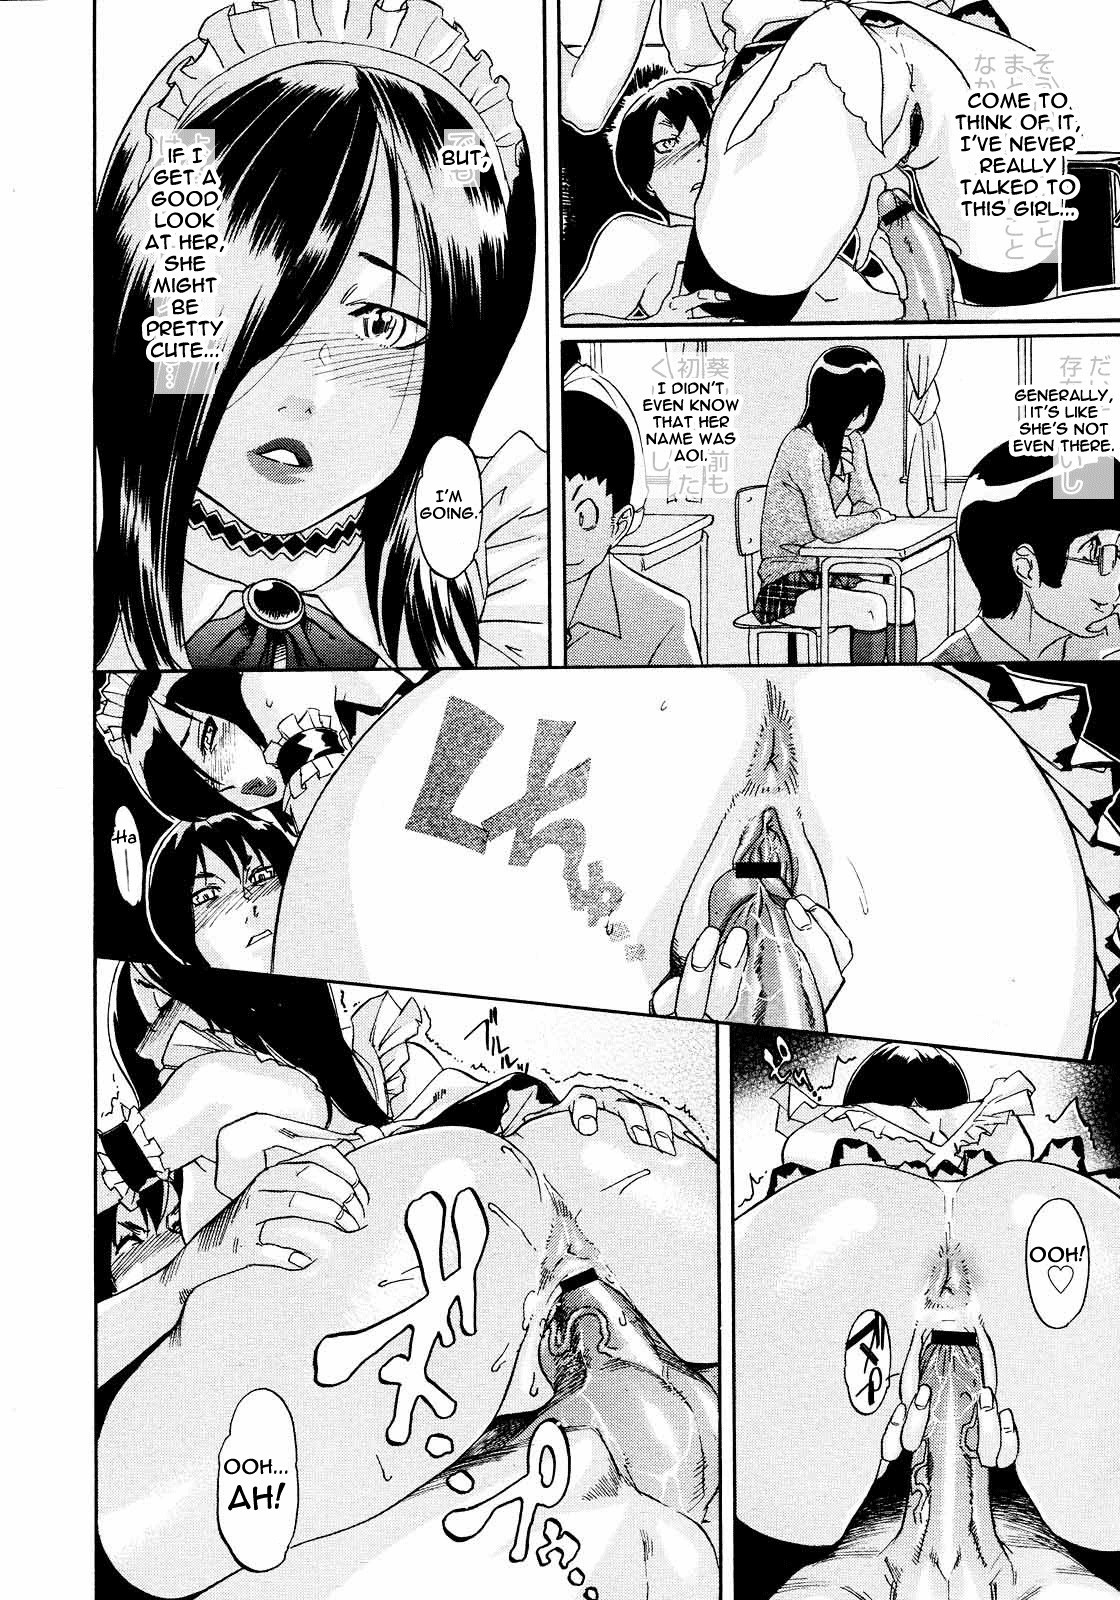 PM03:40 Takuhai Hiyori. 13 hentai manga